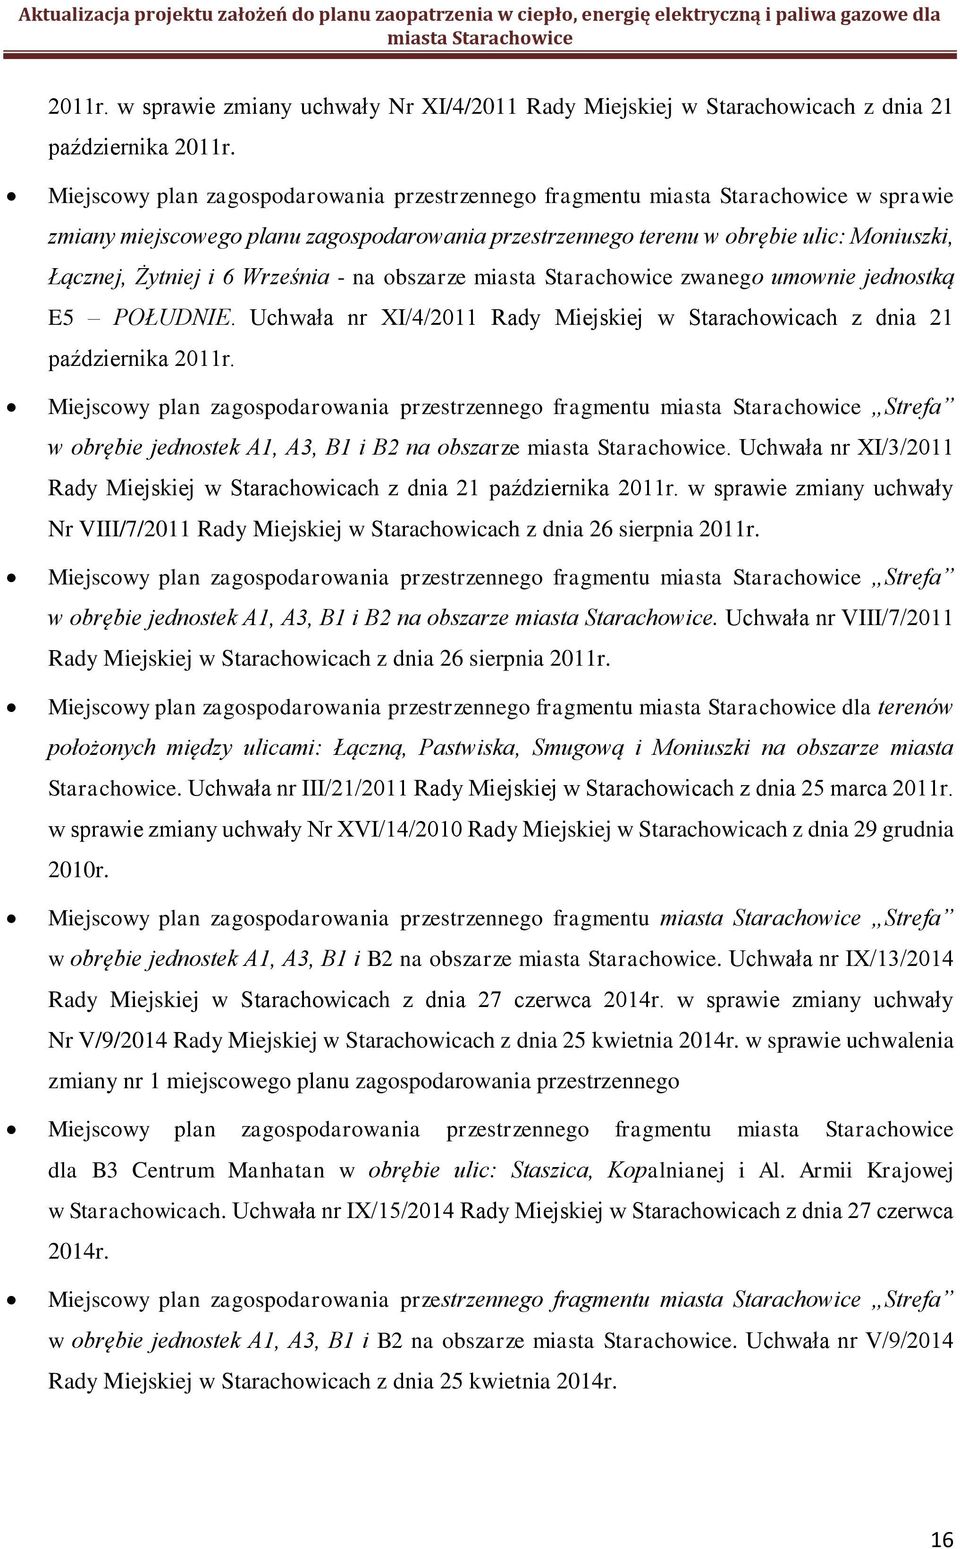 obszarze zwanego umownie jednostką E5 POŁUDNIE. Uchwała nr XI/4/2011 Rady Miejskiej w Starachowicach z dnia 21 października 2011r.